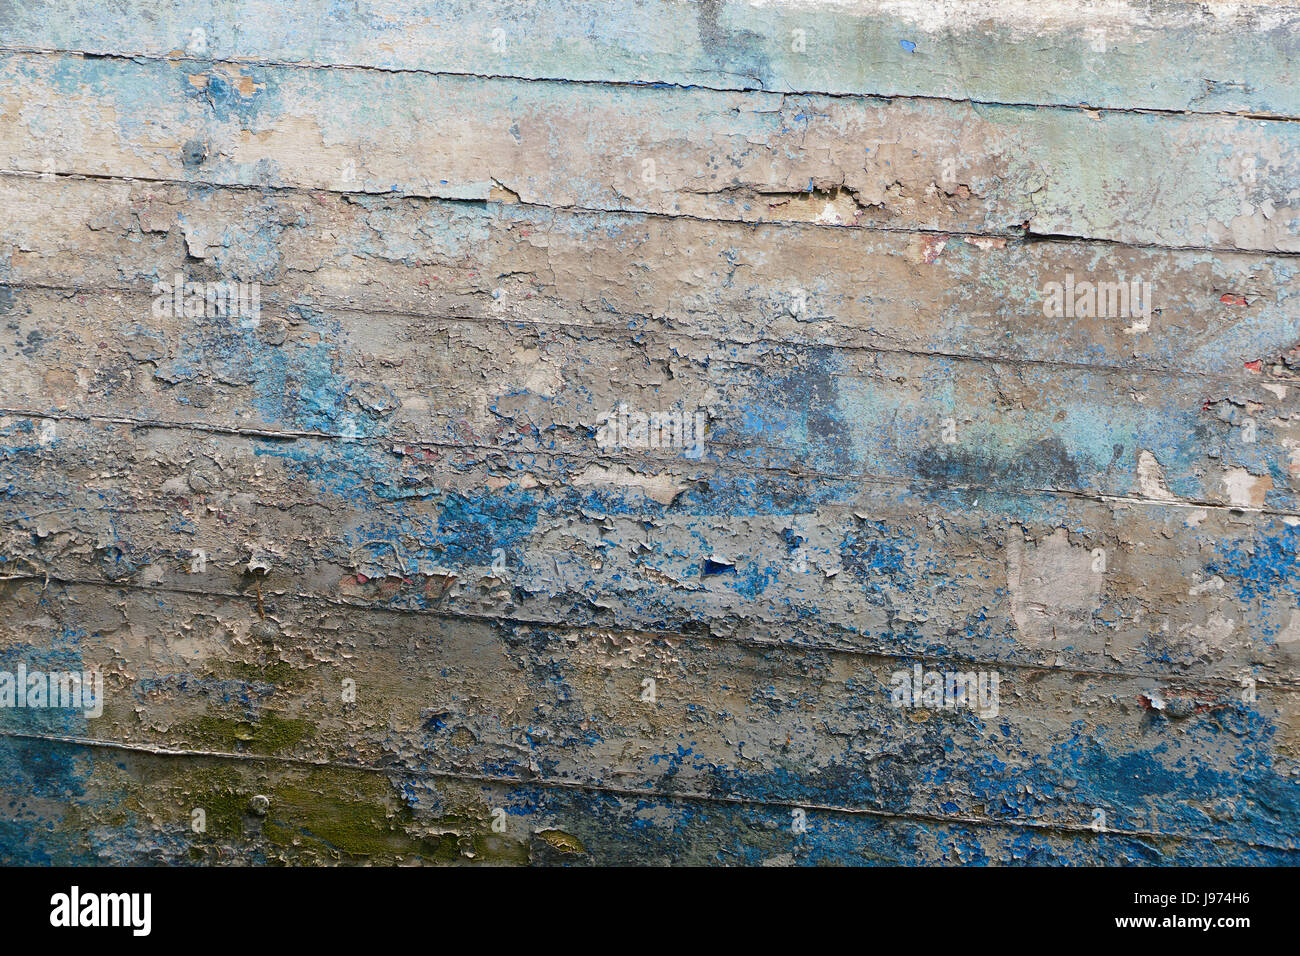 Ils ont perdu la peinture sur une vieille coque de bateau en bois à Minihic-sur-Rance (Rance, l'Ille et Vilaine, Bretagne, France). Banque D'Images